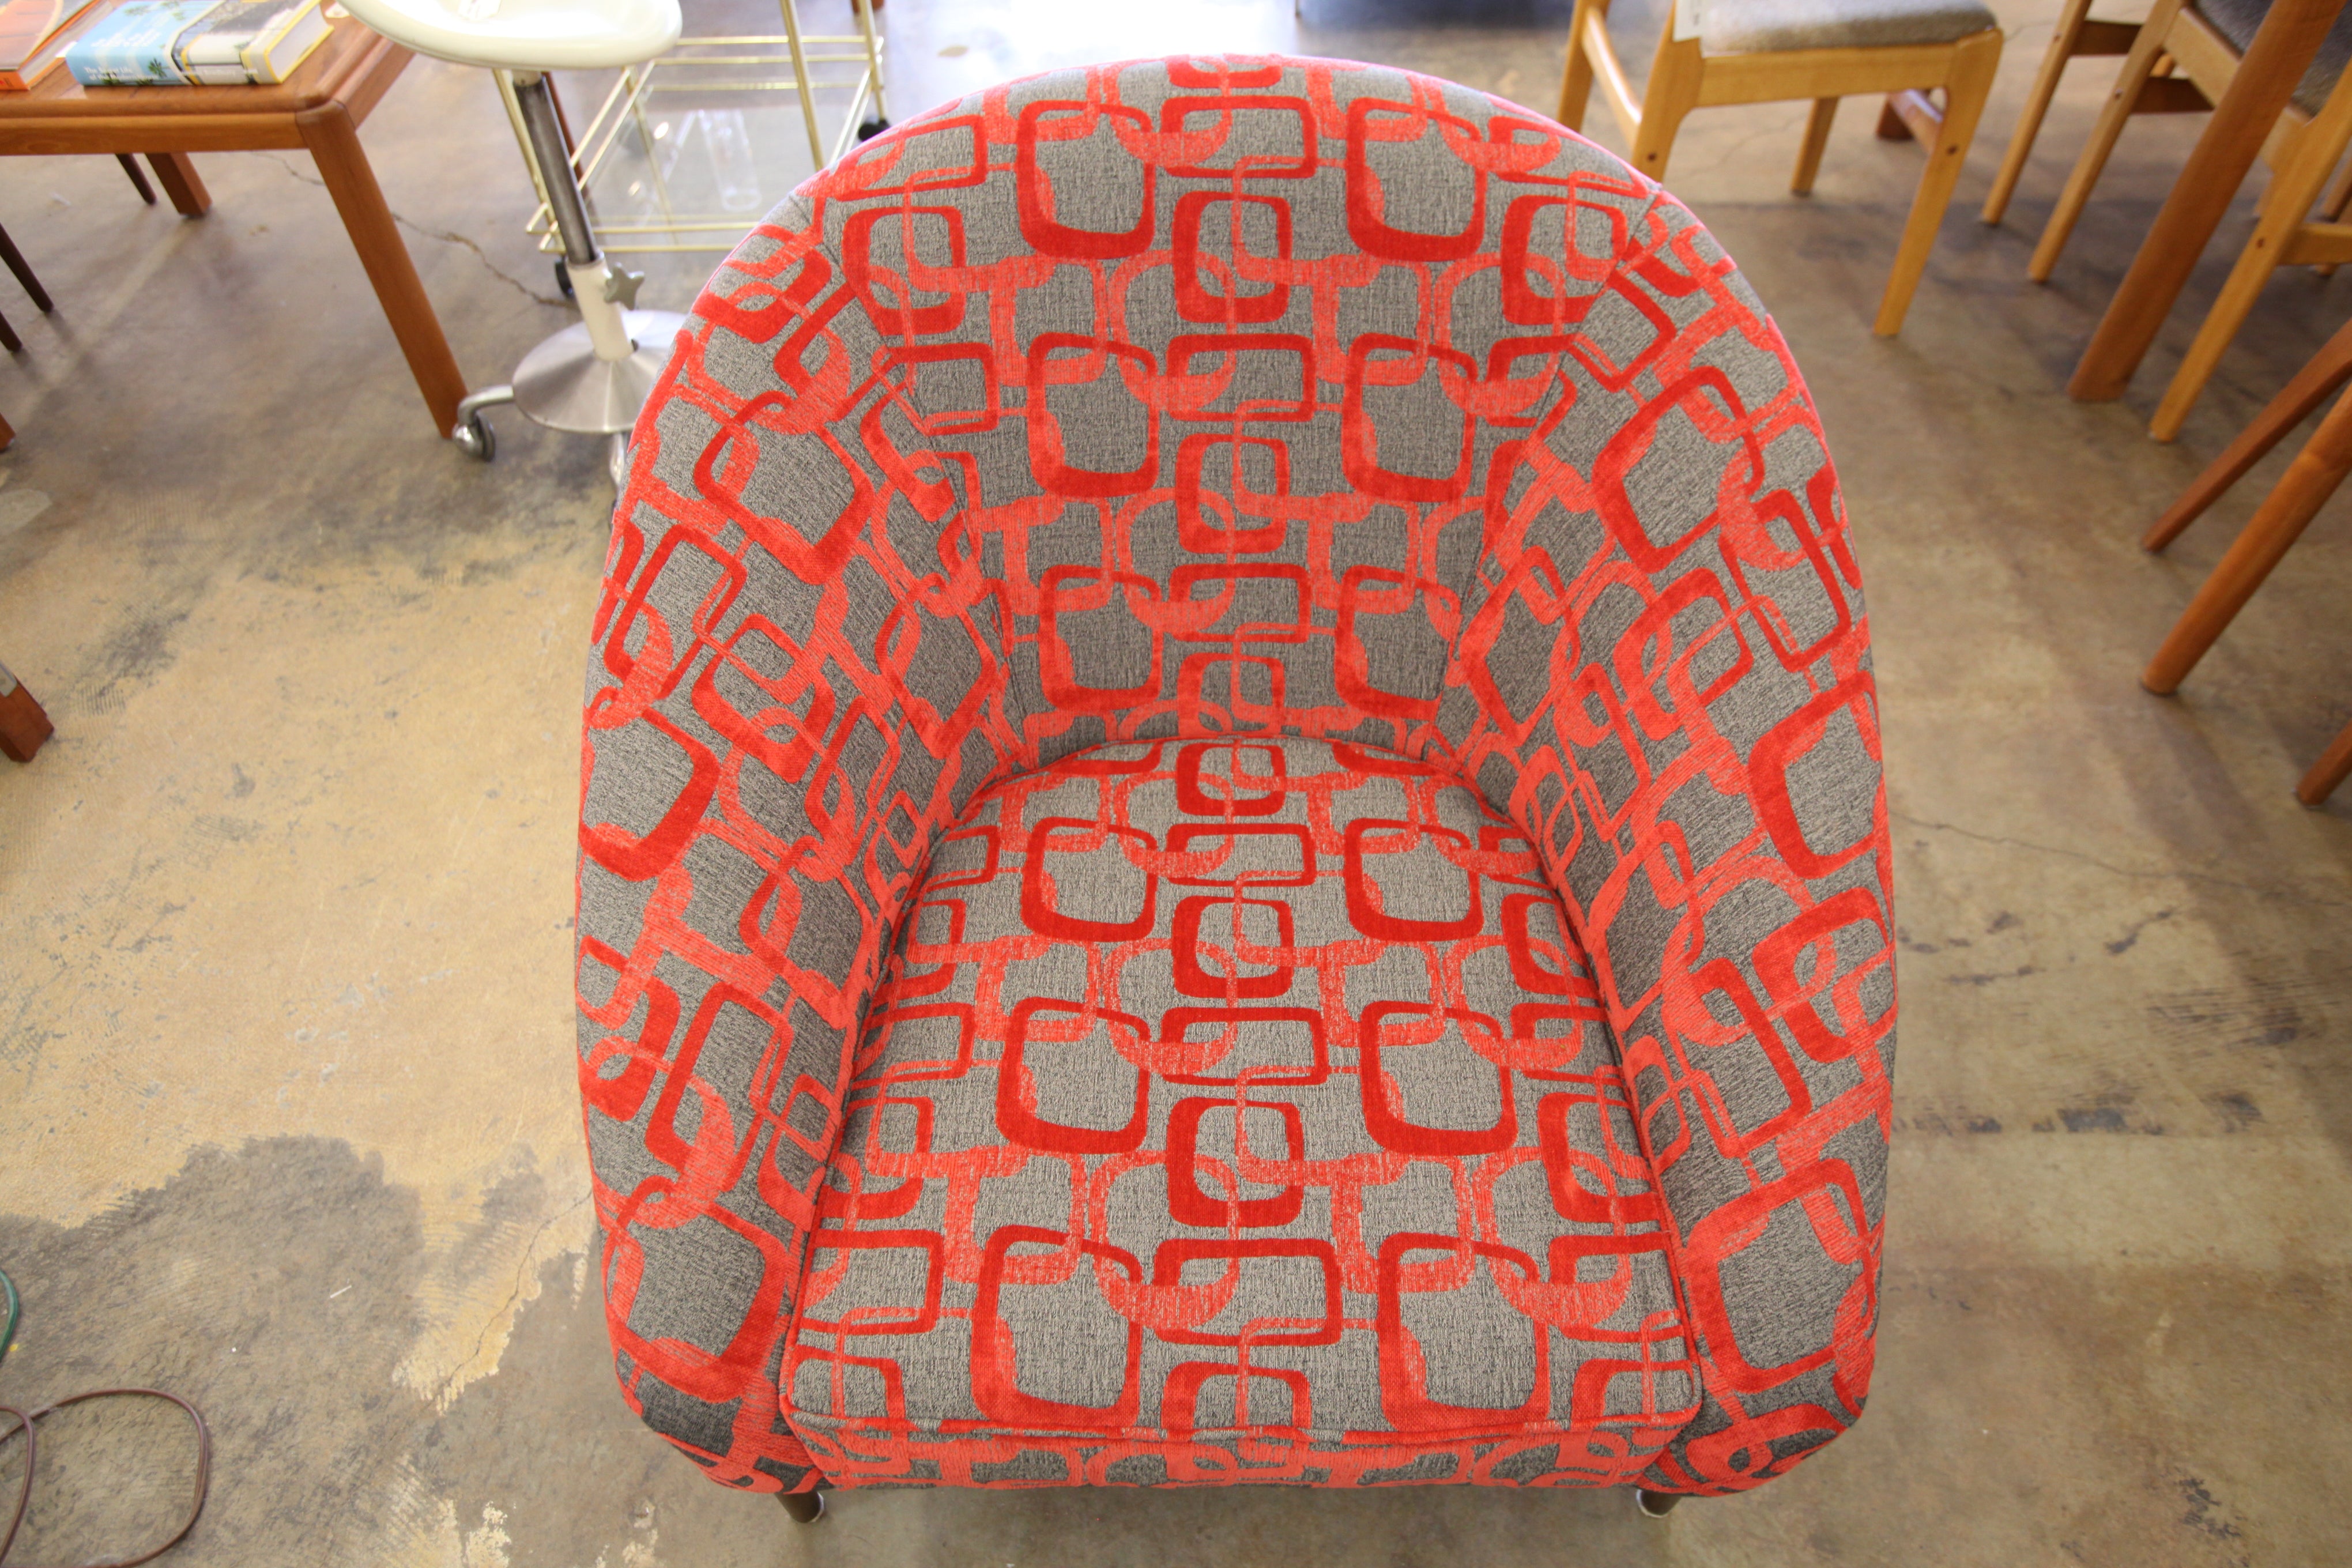 Vintage Walnut Framed Lounge Chair w/ Newer Fabric (34.5"W x 32"H x 36"D)